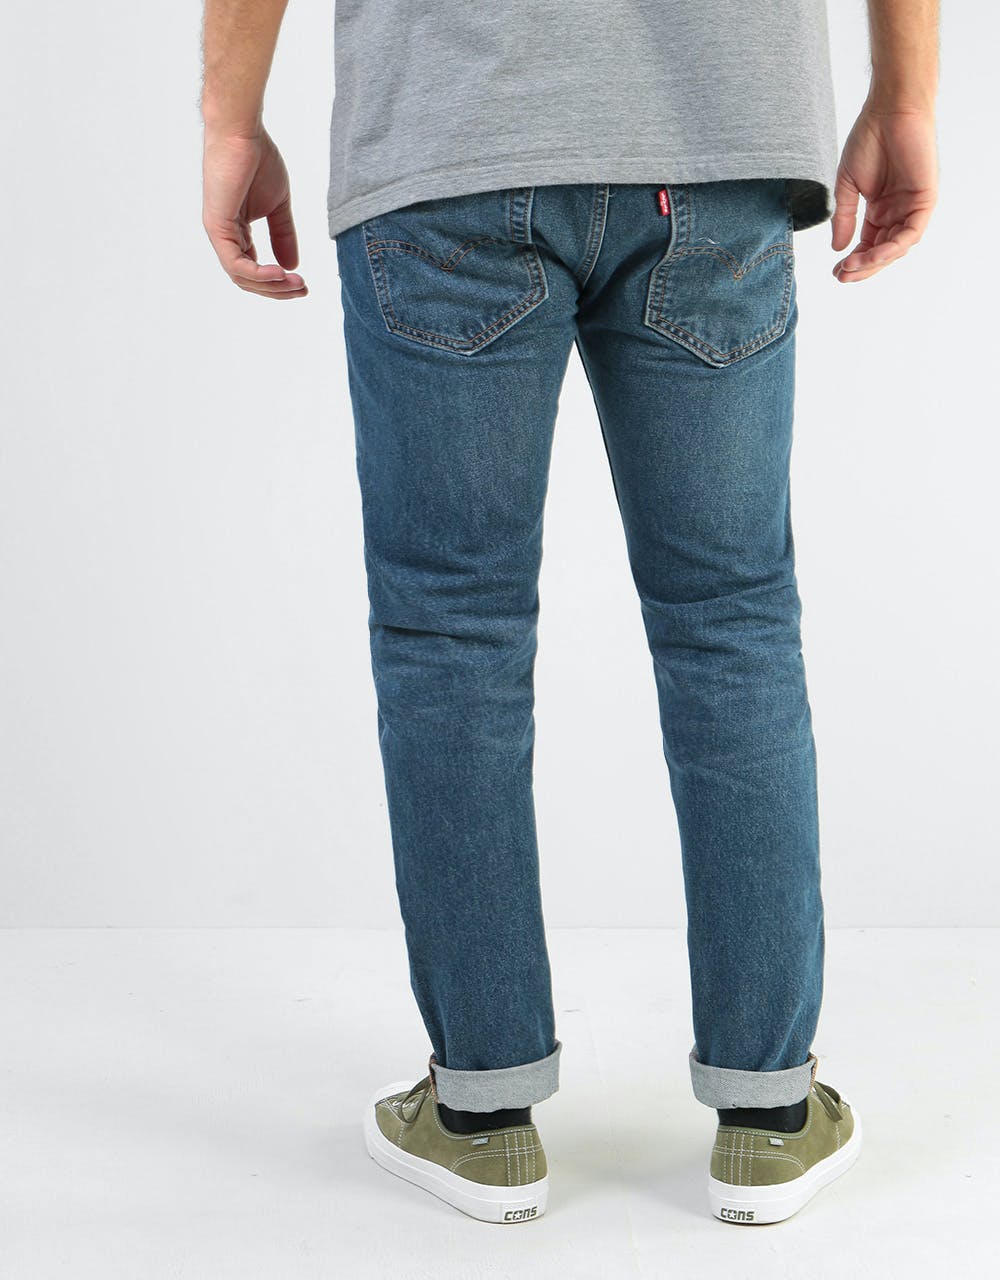 Levi's Skateboarding 512™ Slim Taper Denim Jeans - S&E Bush